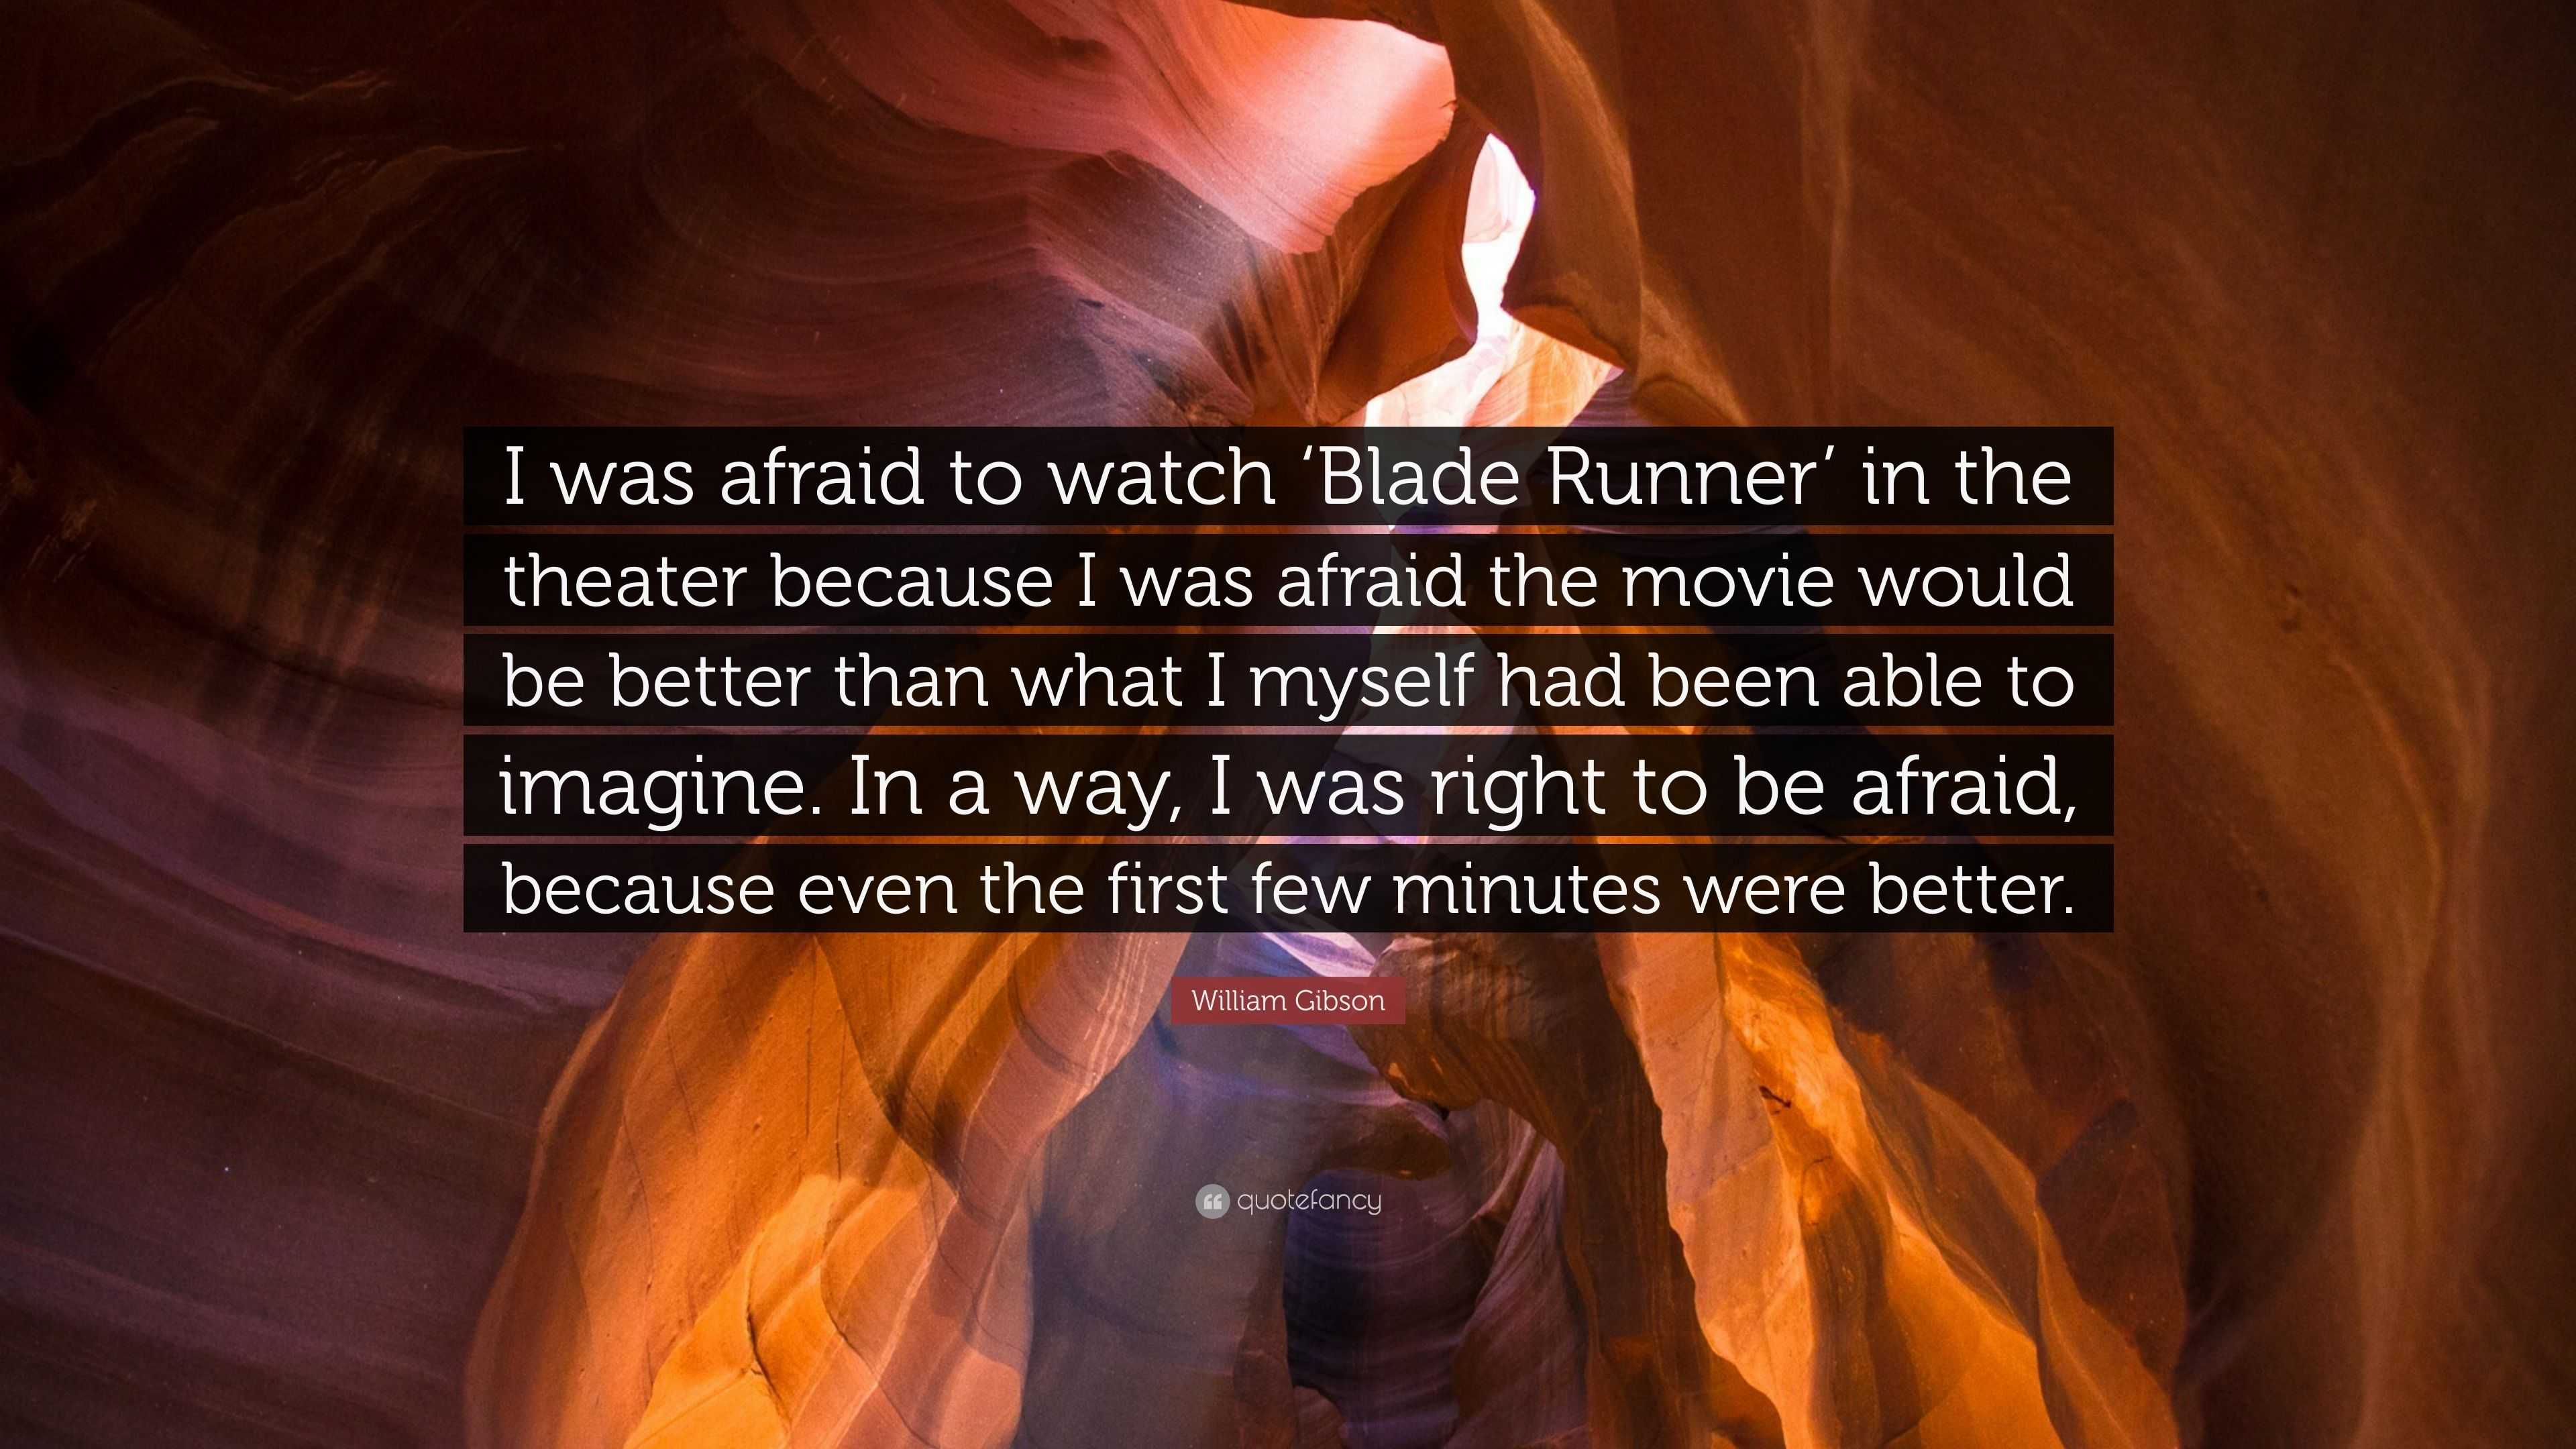 Watch Blade Runner 2049